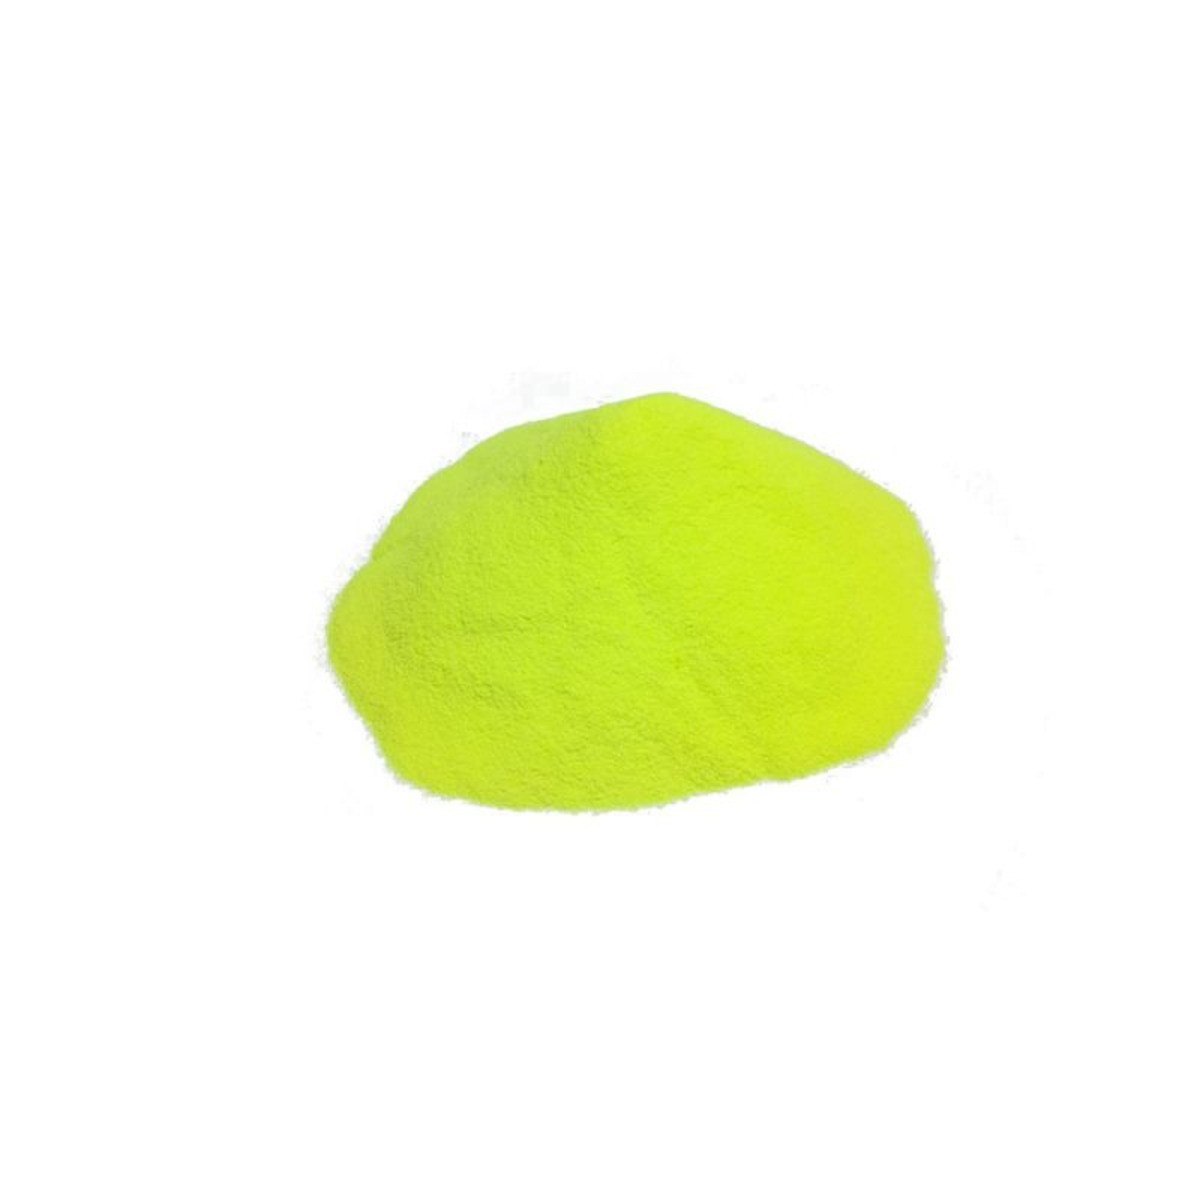 M2 Fishing Plastgum Powder Plasticizer For Ballast -  Yellow - 100 g        